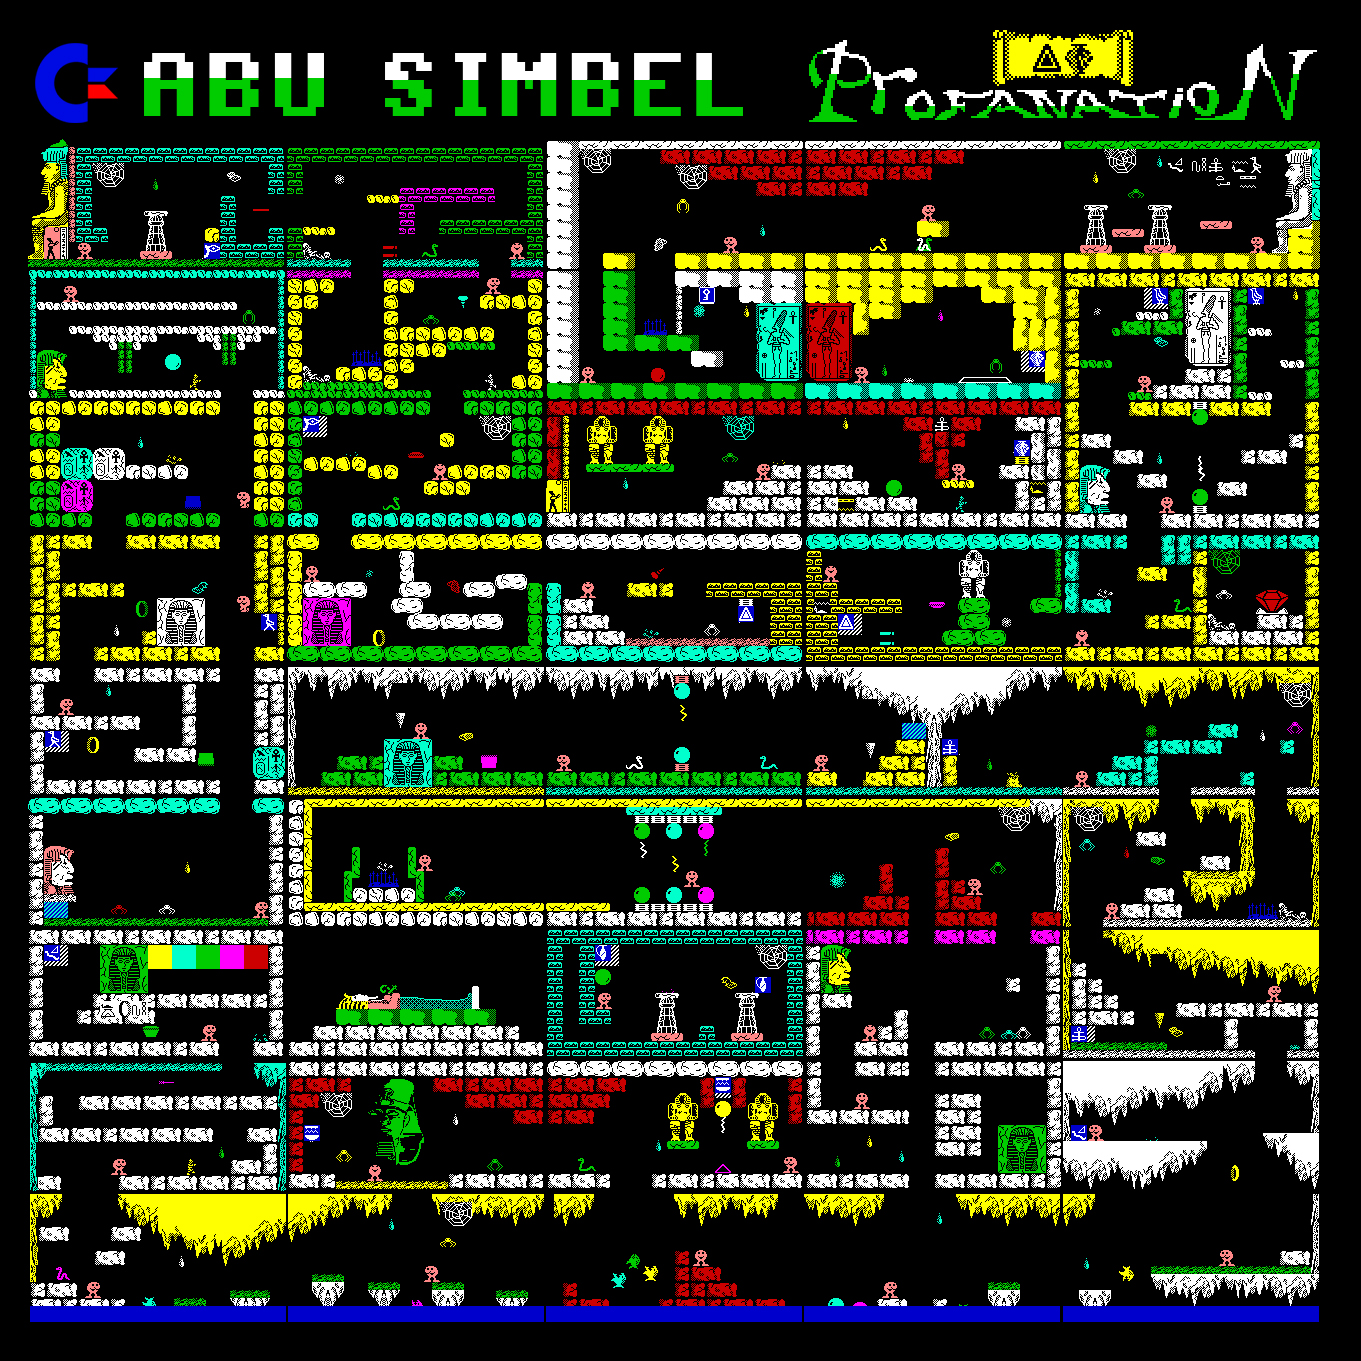 mapa-abu-simbel-profanation-c64